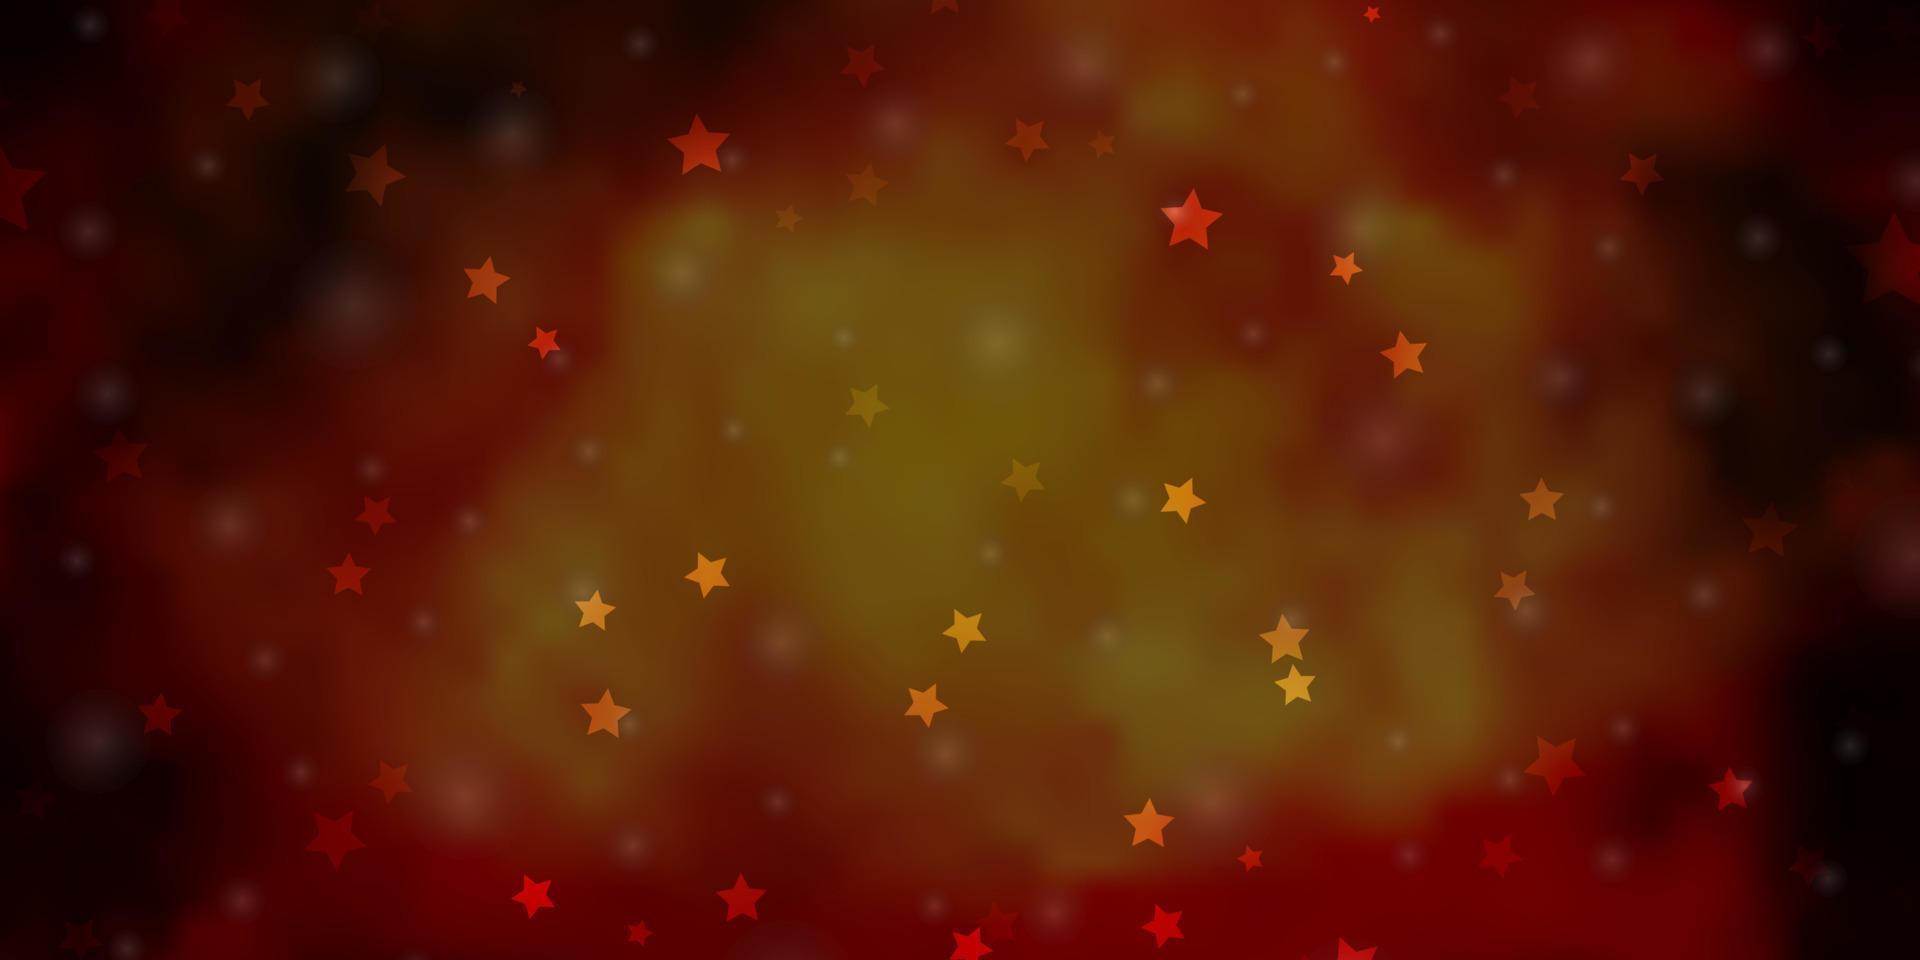 fond de vecteur orange foncé avec de petites et grandes étoiles.